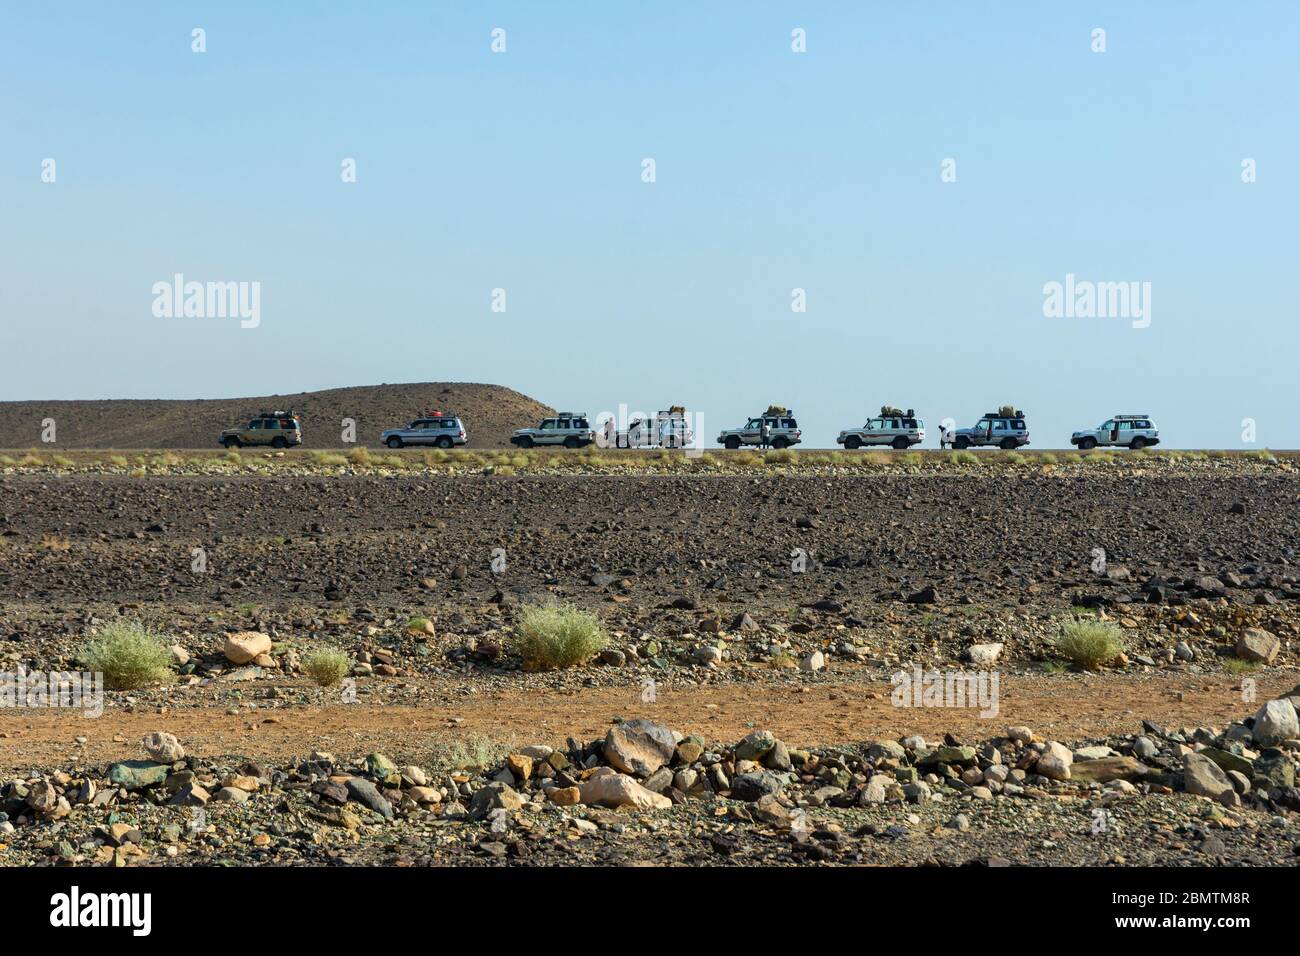 Caravane de 4x4 en direction du safari dans le désert de Danakil, en Éthiopie Banque D'Images